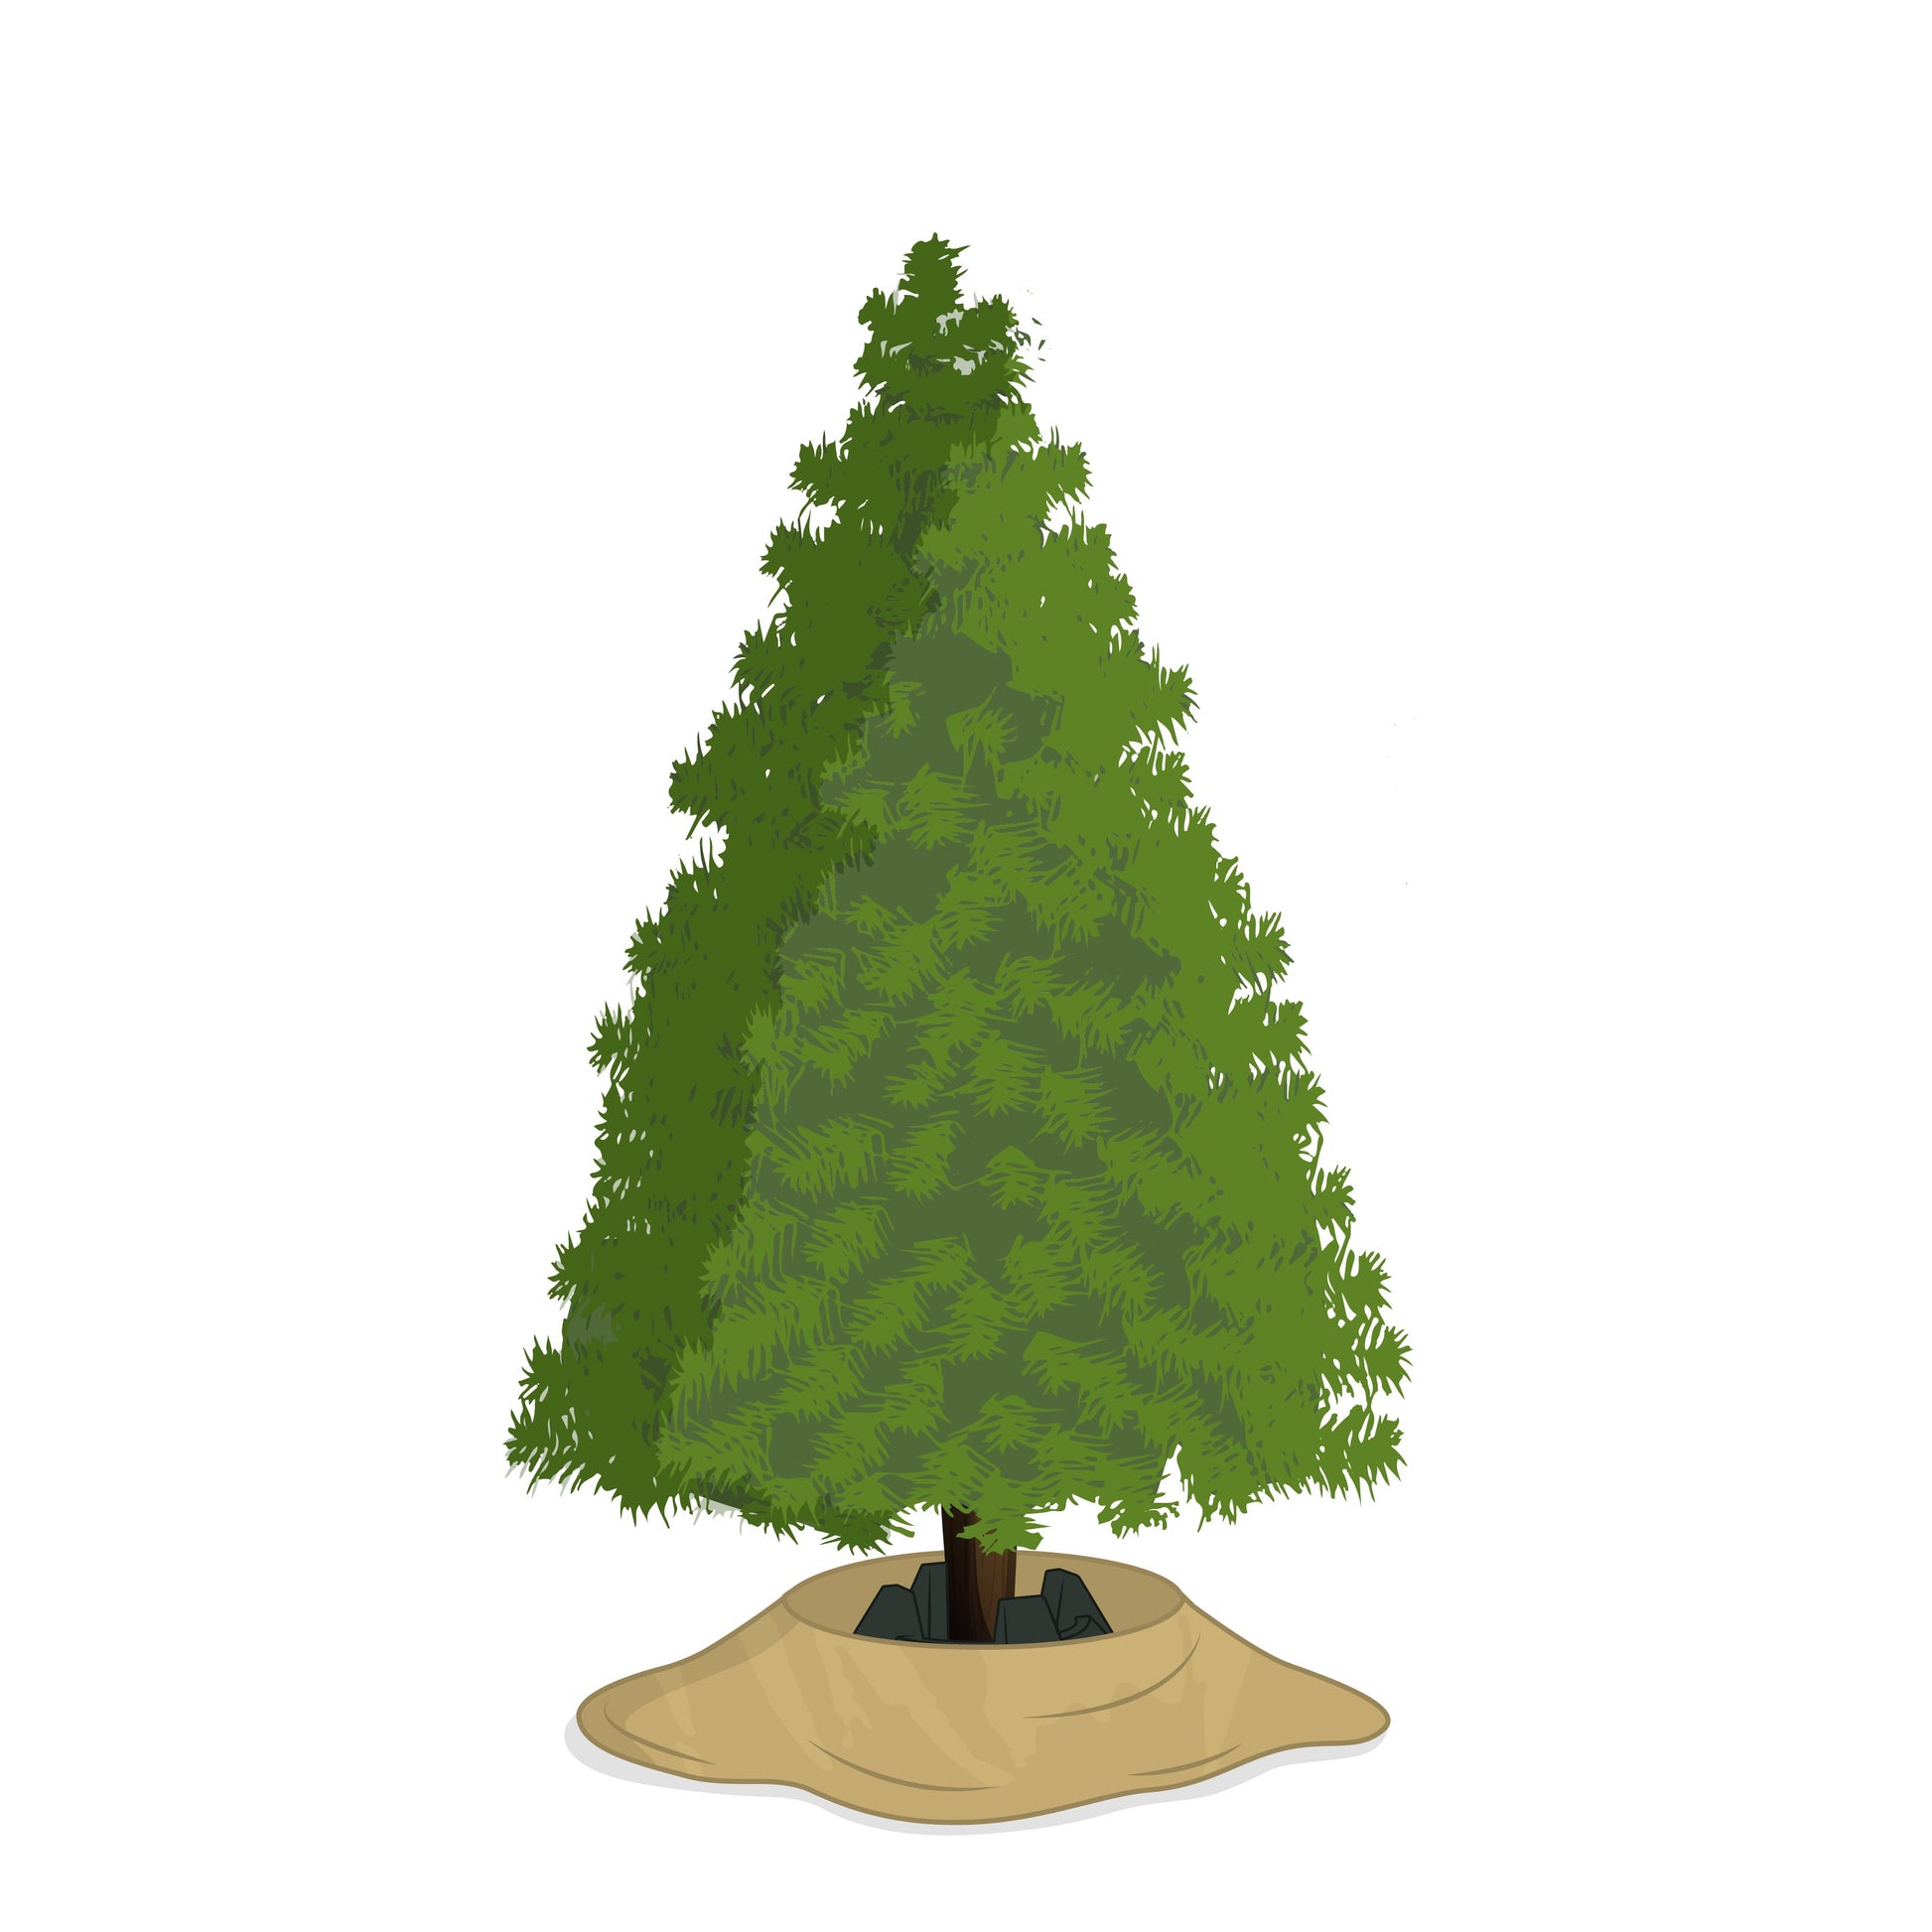 Illustration - Tannenbaum, Weihnachtsbaum, Christbaum mit unserer treemova Weihnachtsbaum Transporthülle als Weihnachtsbaumdecke unterm Baum ausgebreitet